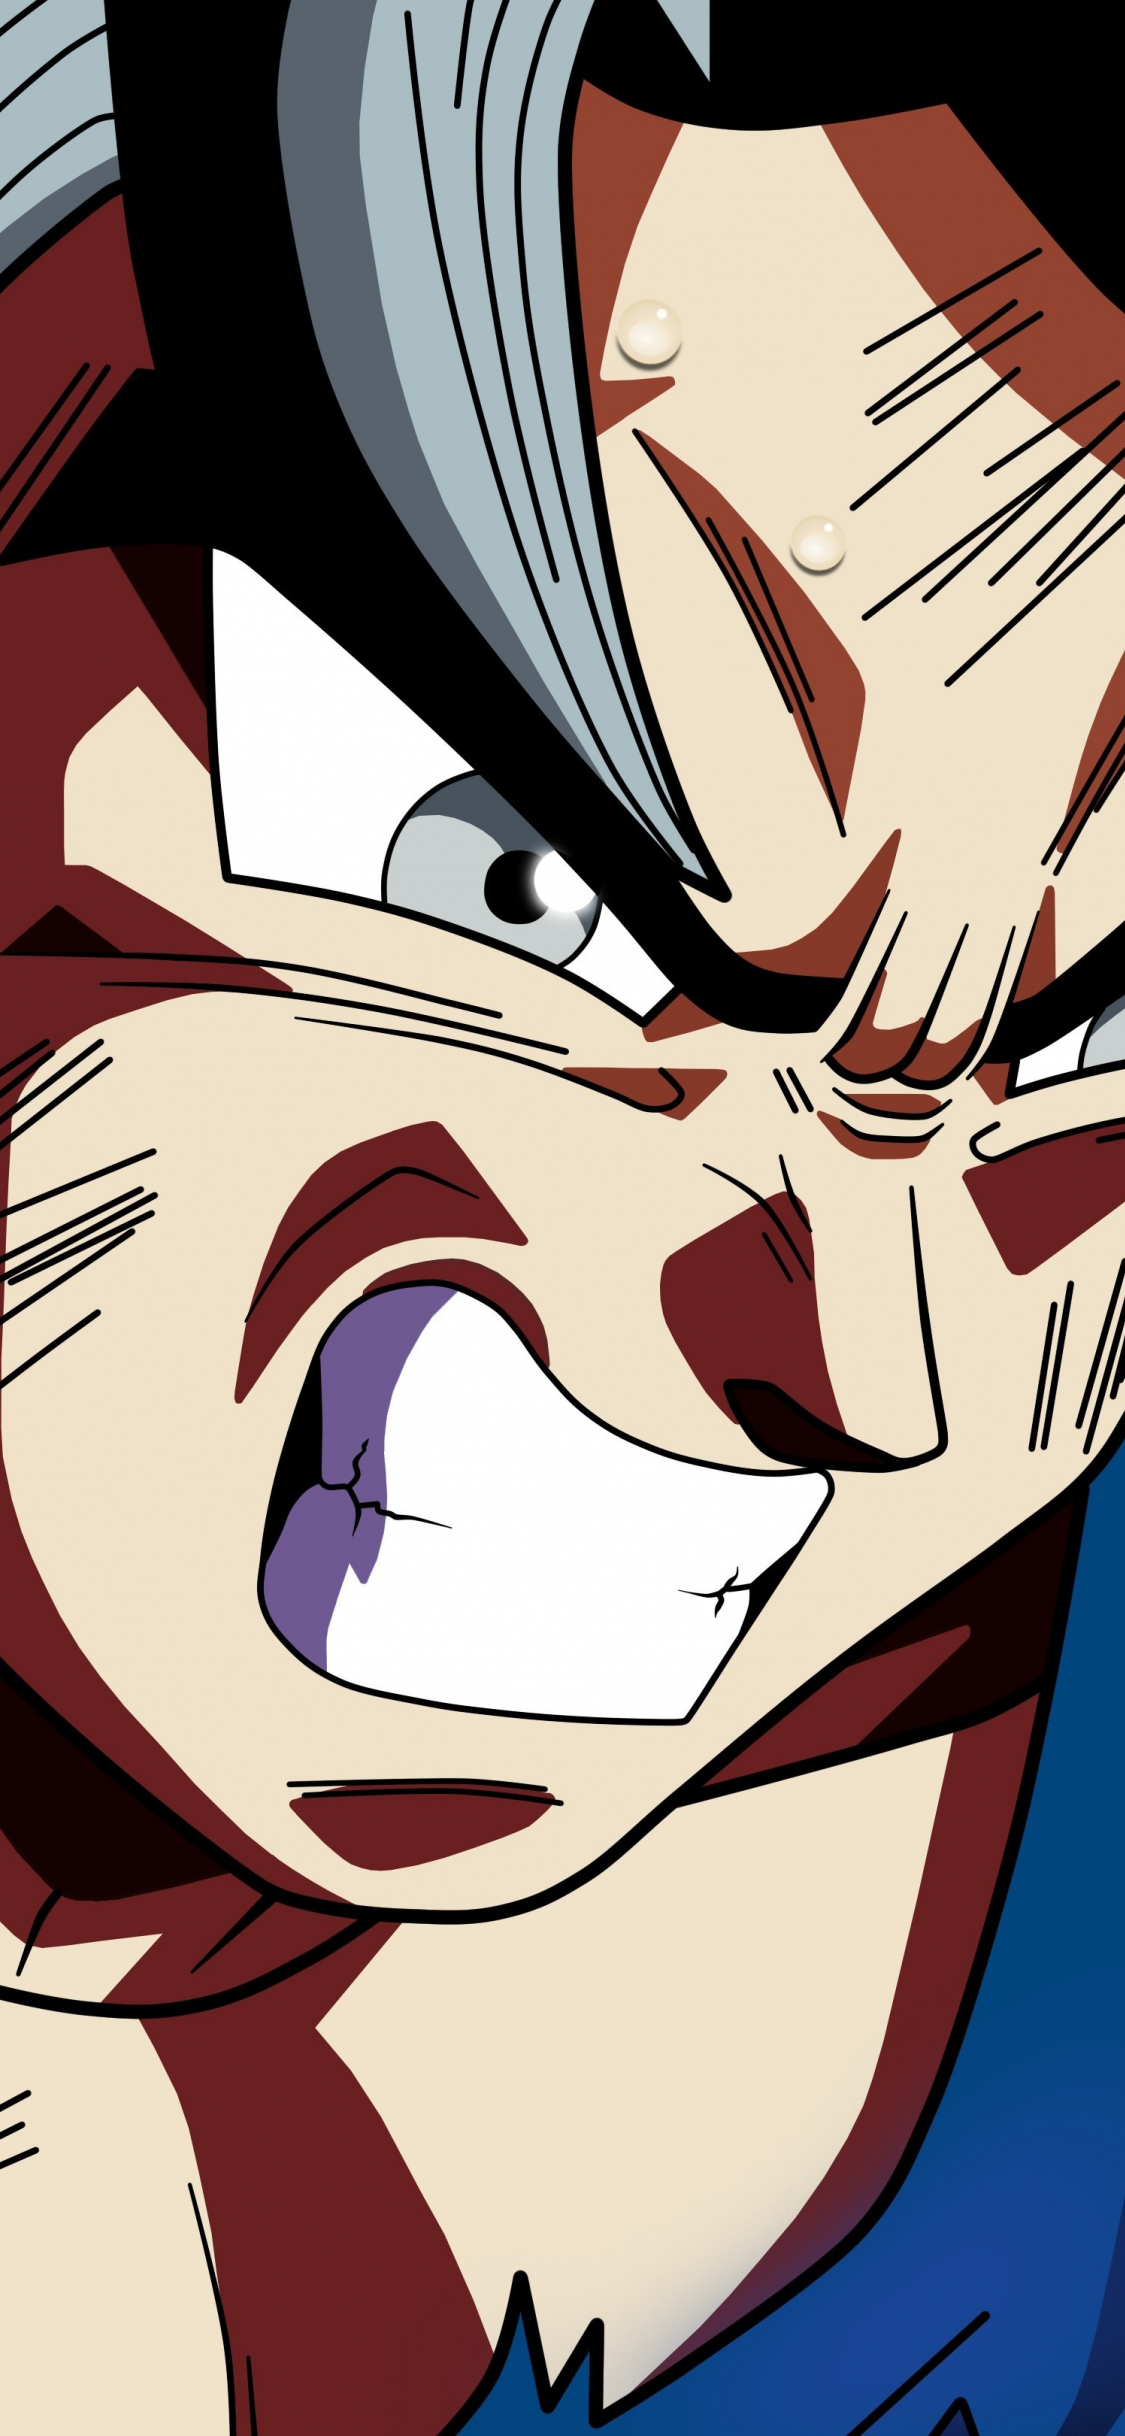 Goku face Wallpapers Download | MobCup